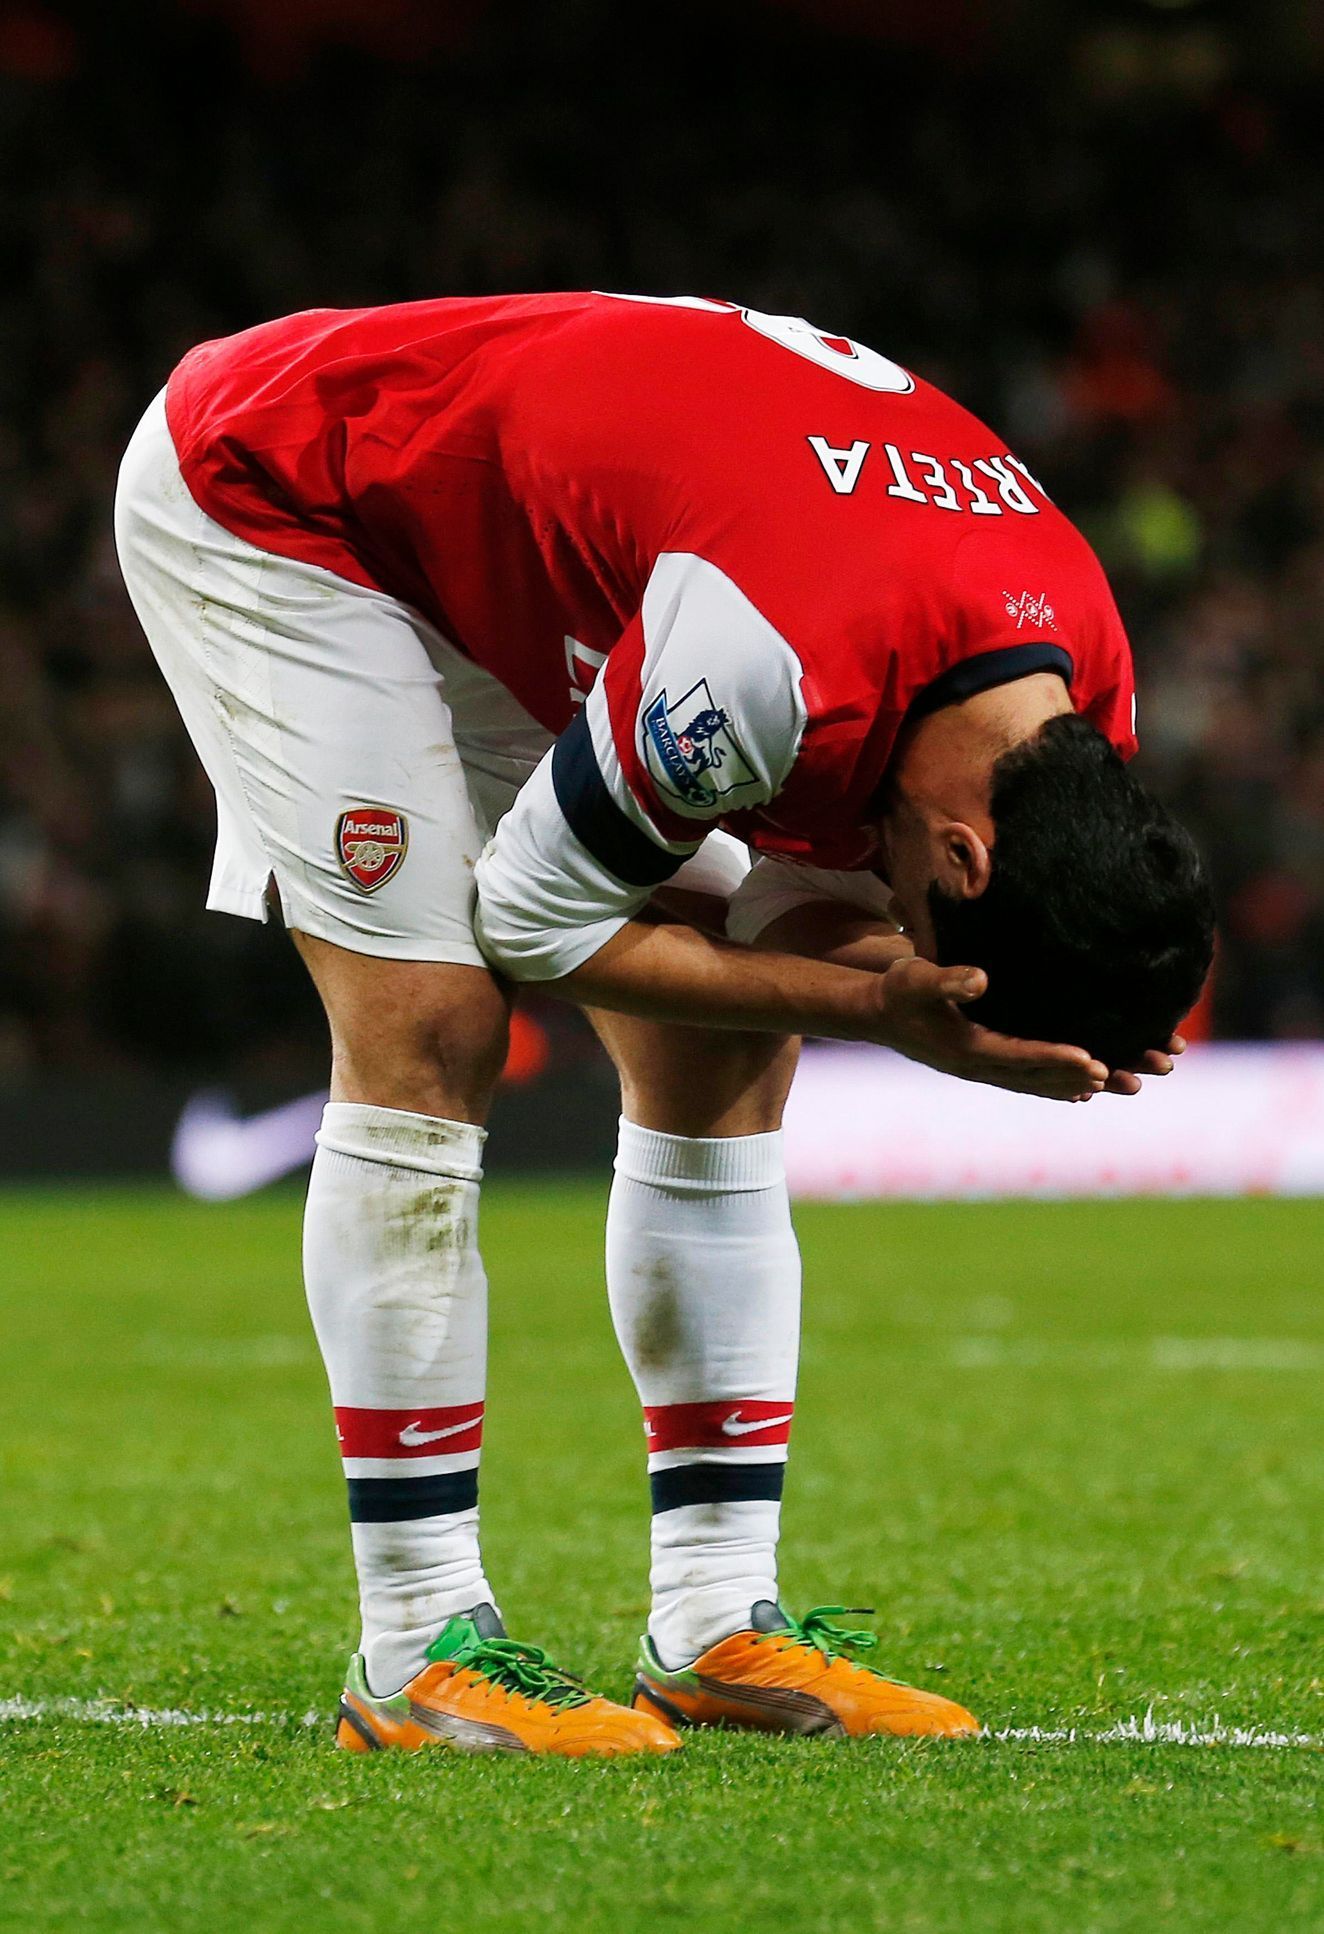 Mikel Arteta neproměnil pokutový kop, Arsenal remizoval